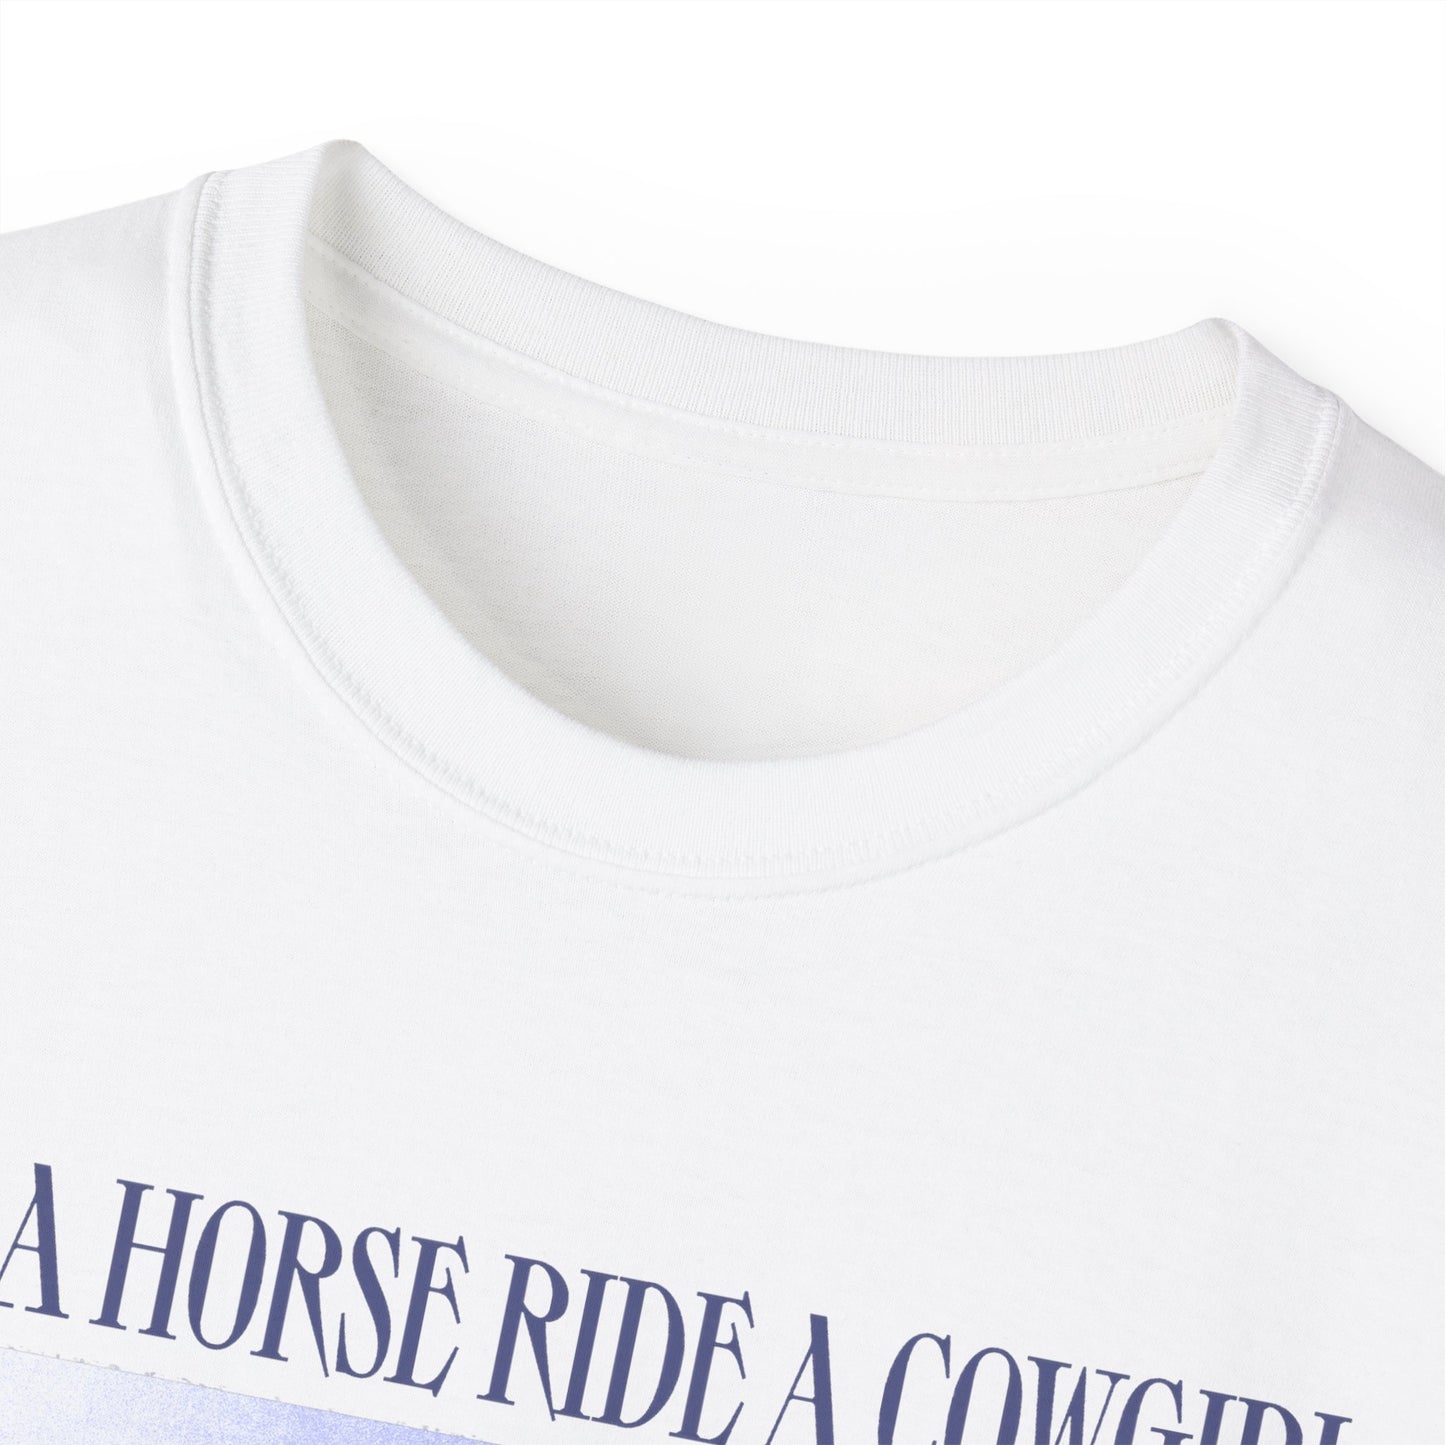 Save a Horse, Ride a Cowgirl - Tshirt